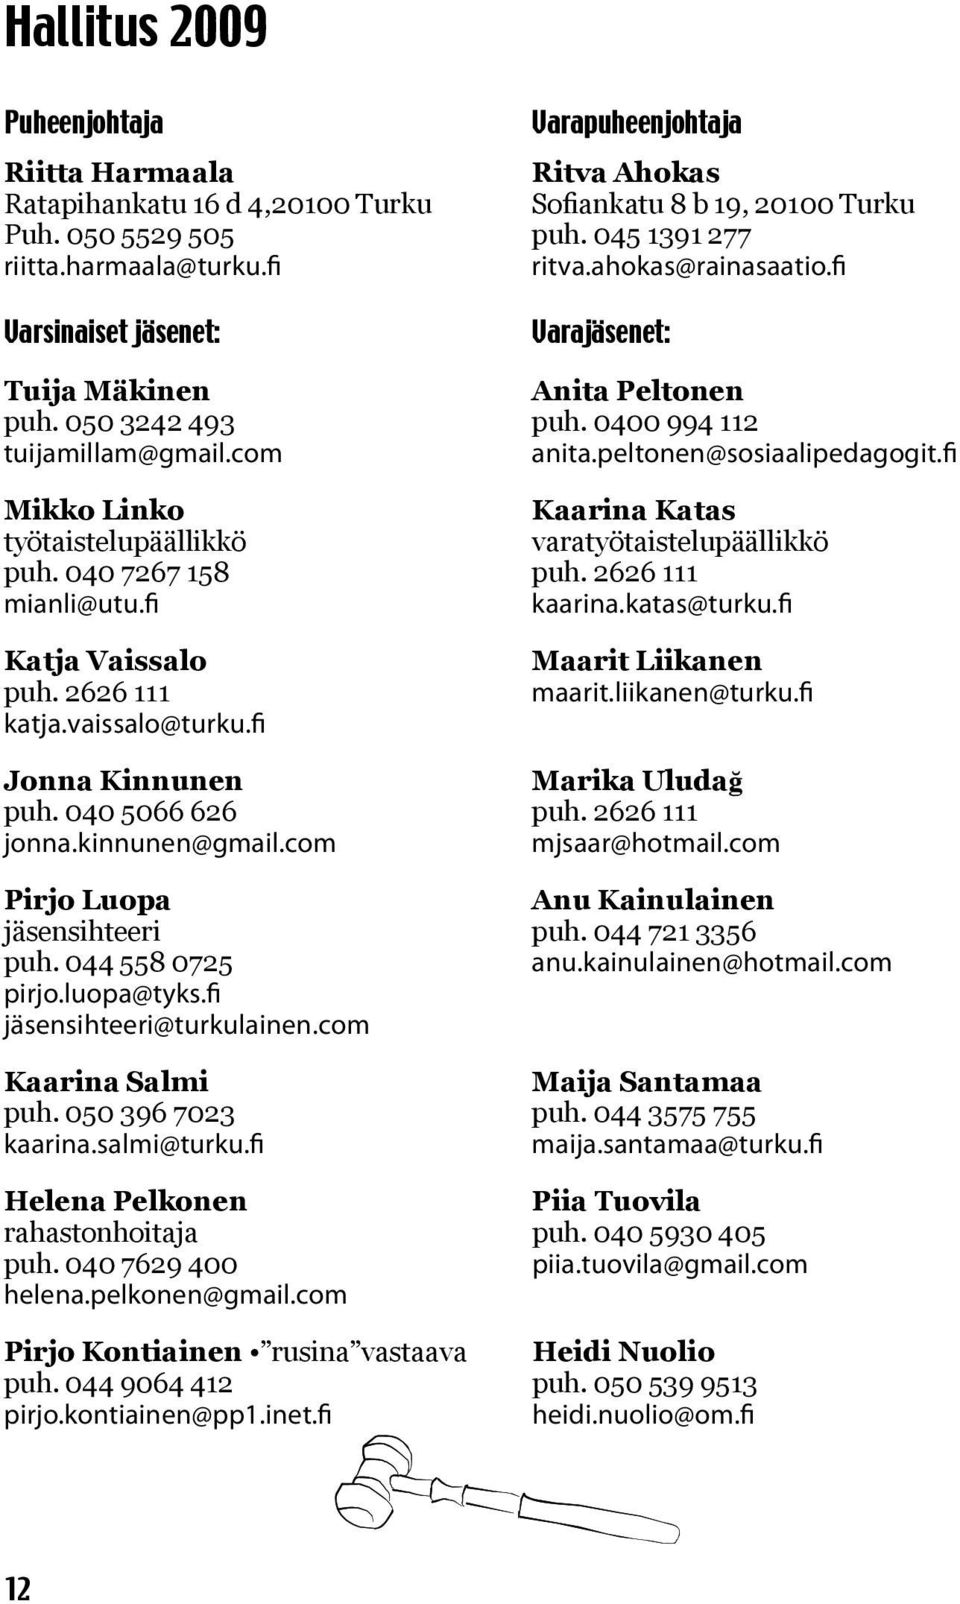 fi Mikko Linko Kaarina Katas työtaistelupäällikkö varatyötaistelupäällikkö puh. 040 7267 158 puh. 2626 111 mianli@utu.fi kaarina.katas@turku.fi Katja Vaissalo puh. 2626 111 katja.vaissalo@turku.